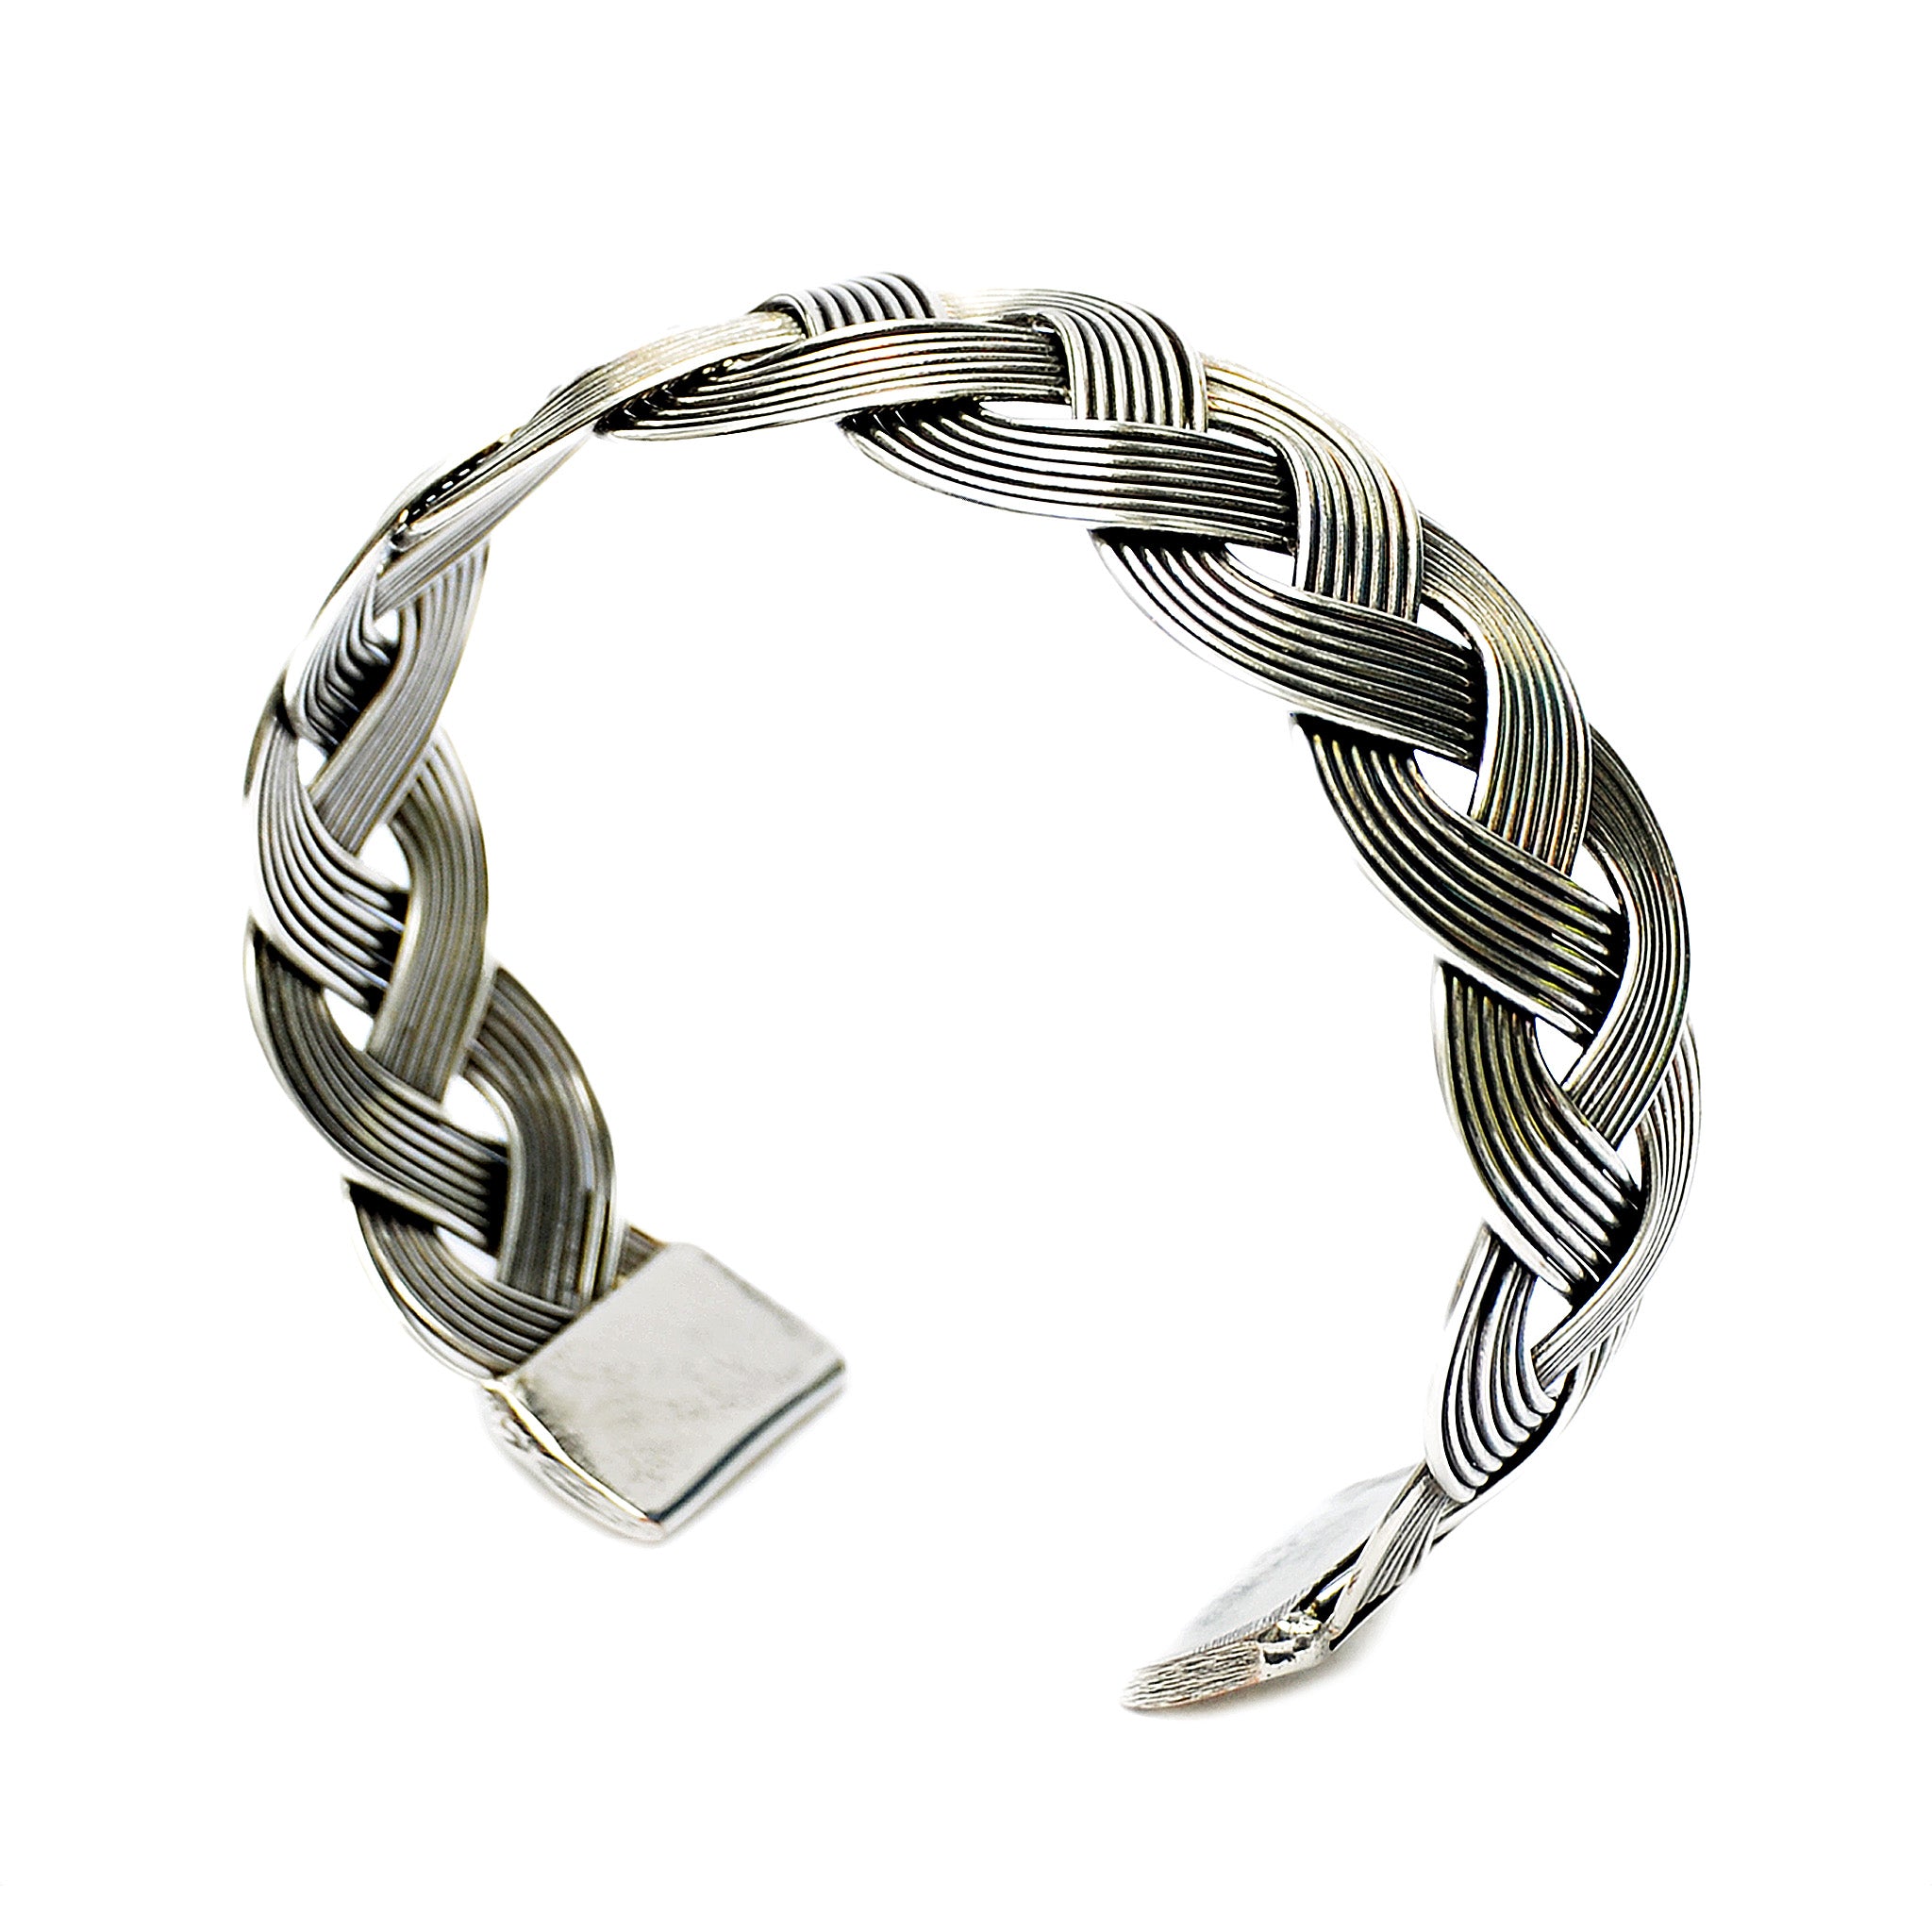 Silver wide bracelet